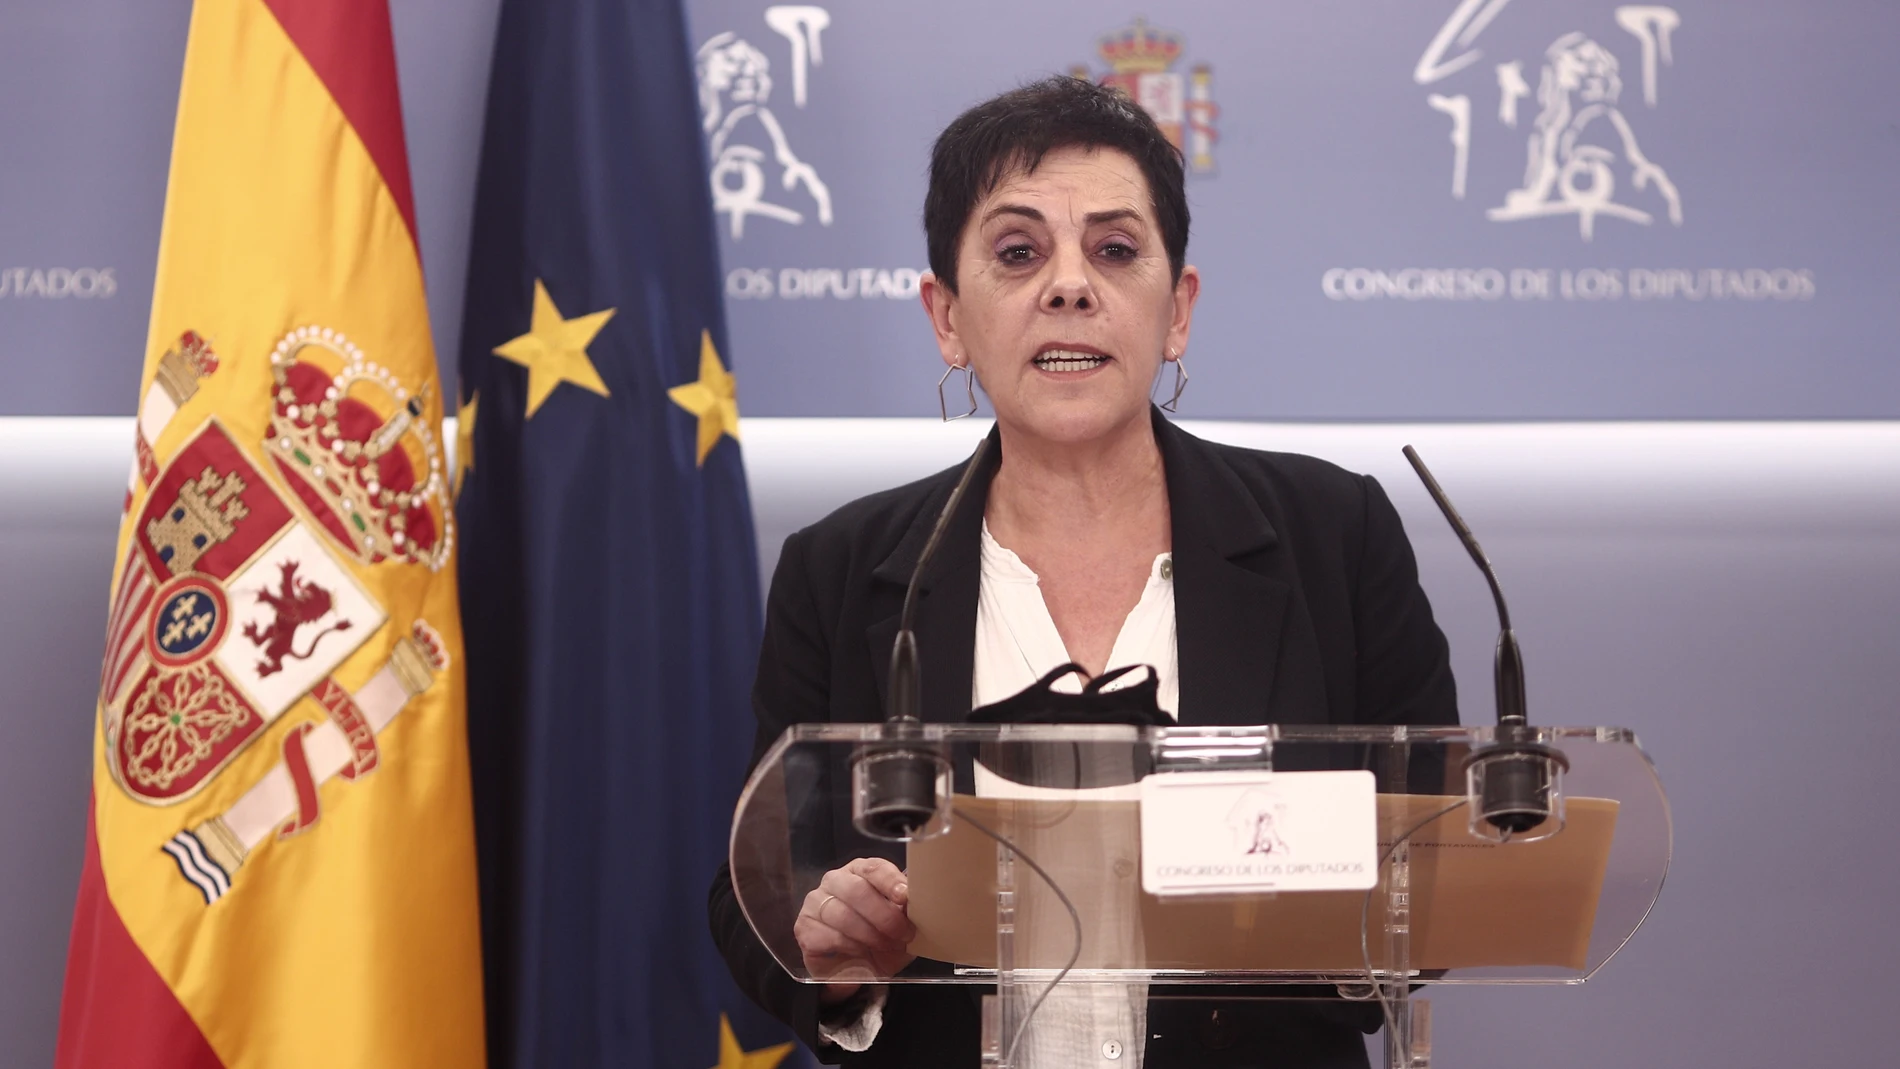 La portavoz parlamentaria de EH Bildu, Mertxe Aizpurua, interviene en una rueda de prensa anterior a una Junta de Portavoces convocada en el Congreso de los Diputados, a 13 de abril de 2021, en Madrid